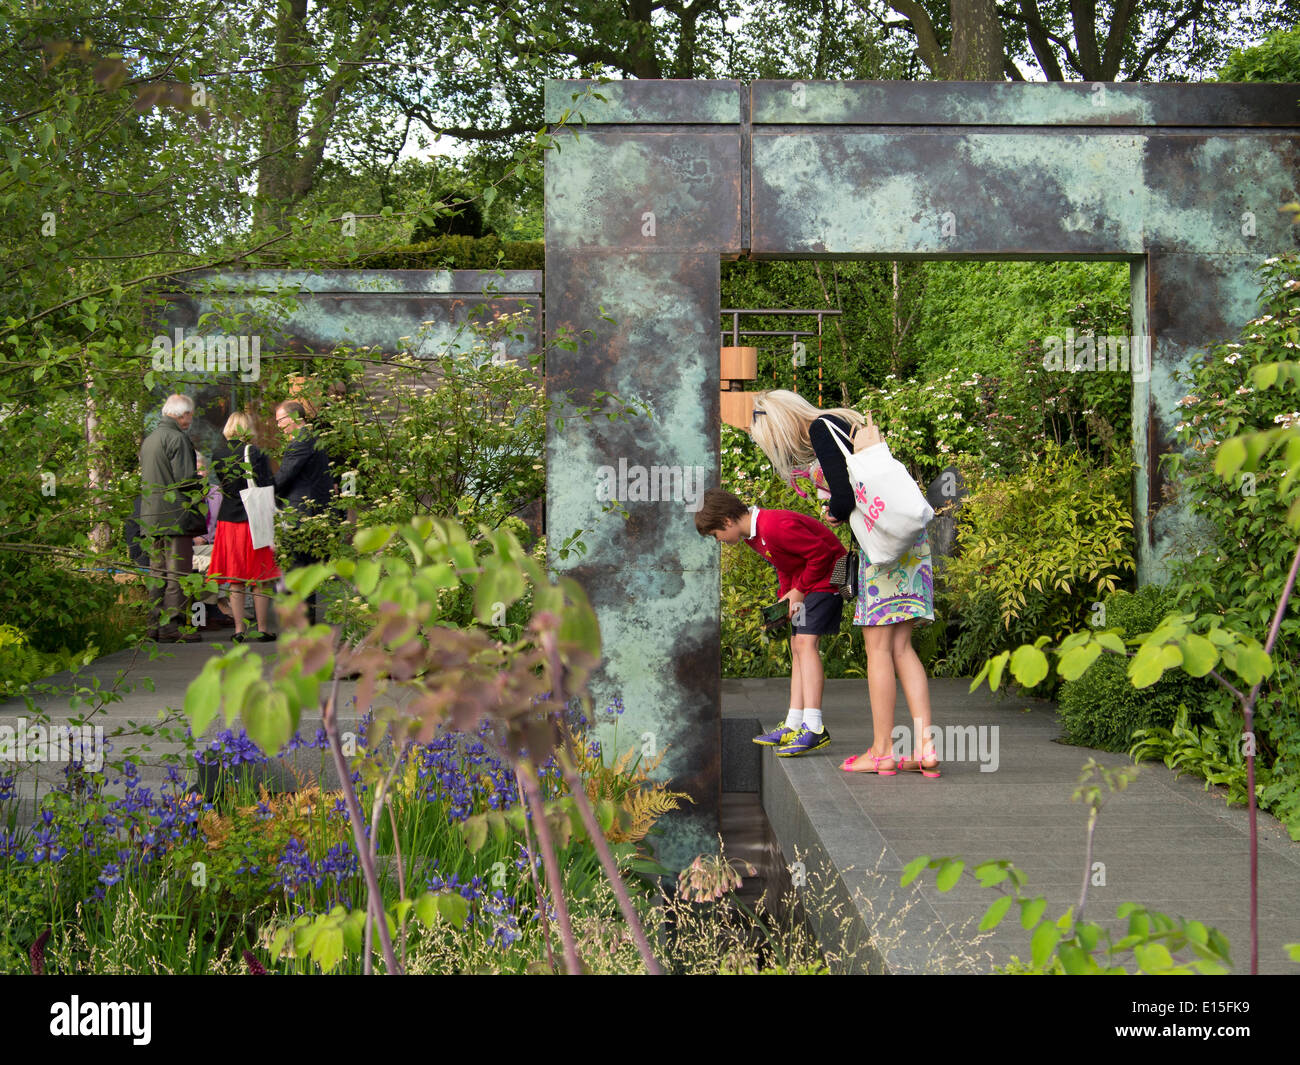 Chelsea, London, UK. 22 mai 2014. Les visiteurs à Chelsea Flower Show 2014 : Crédit Cabanel/Alamy Live News Banque D'Images